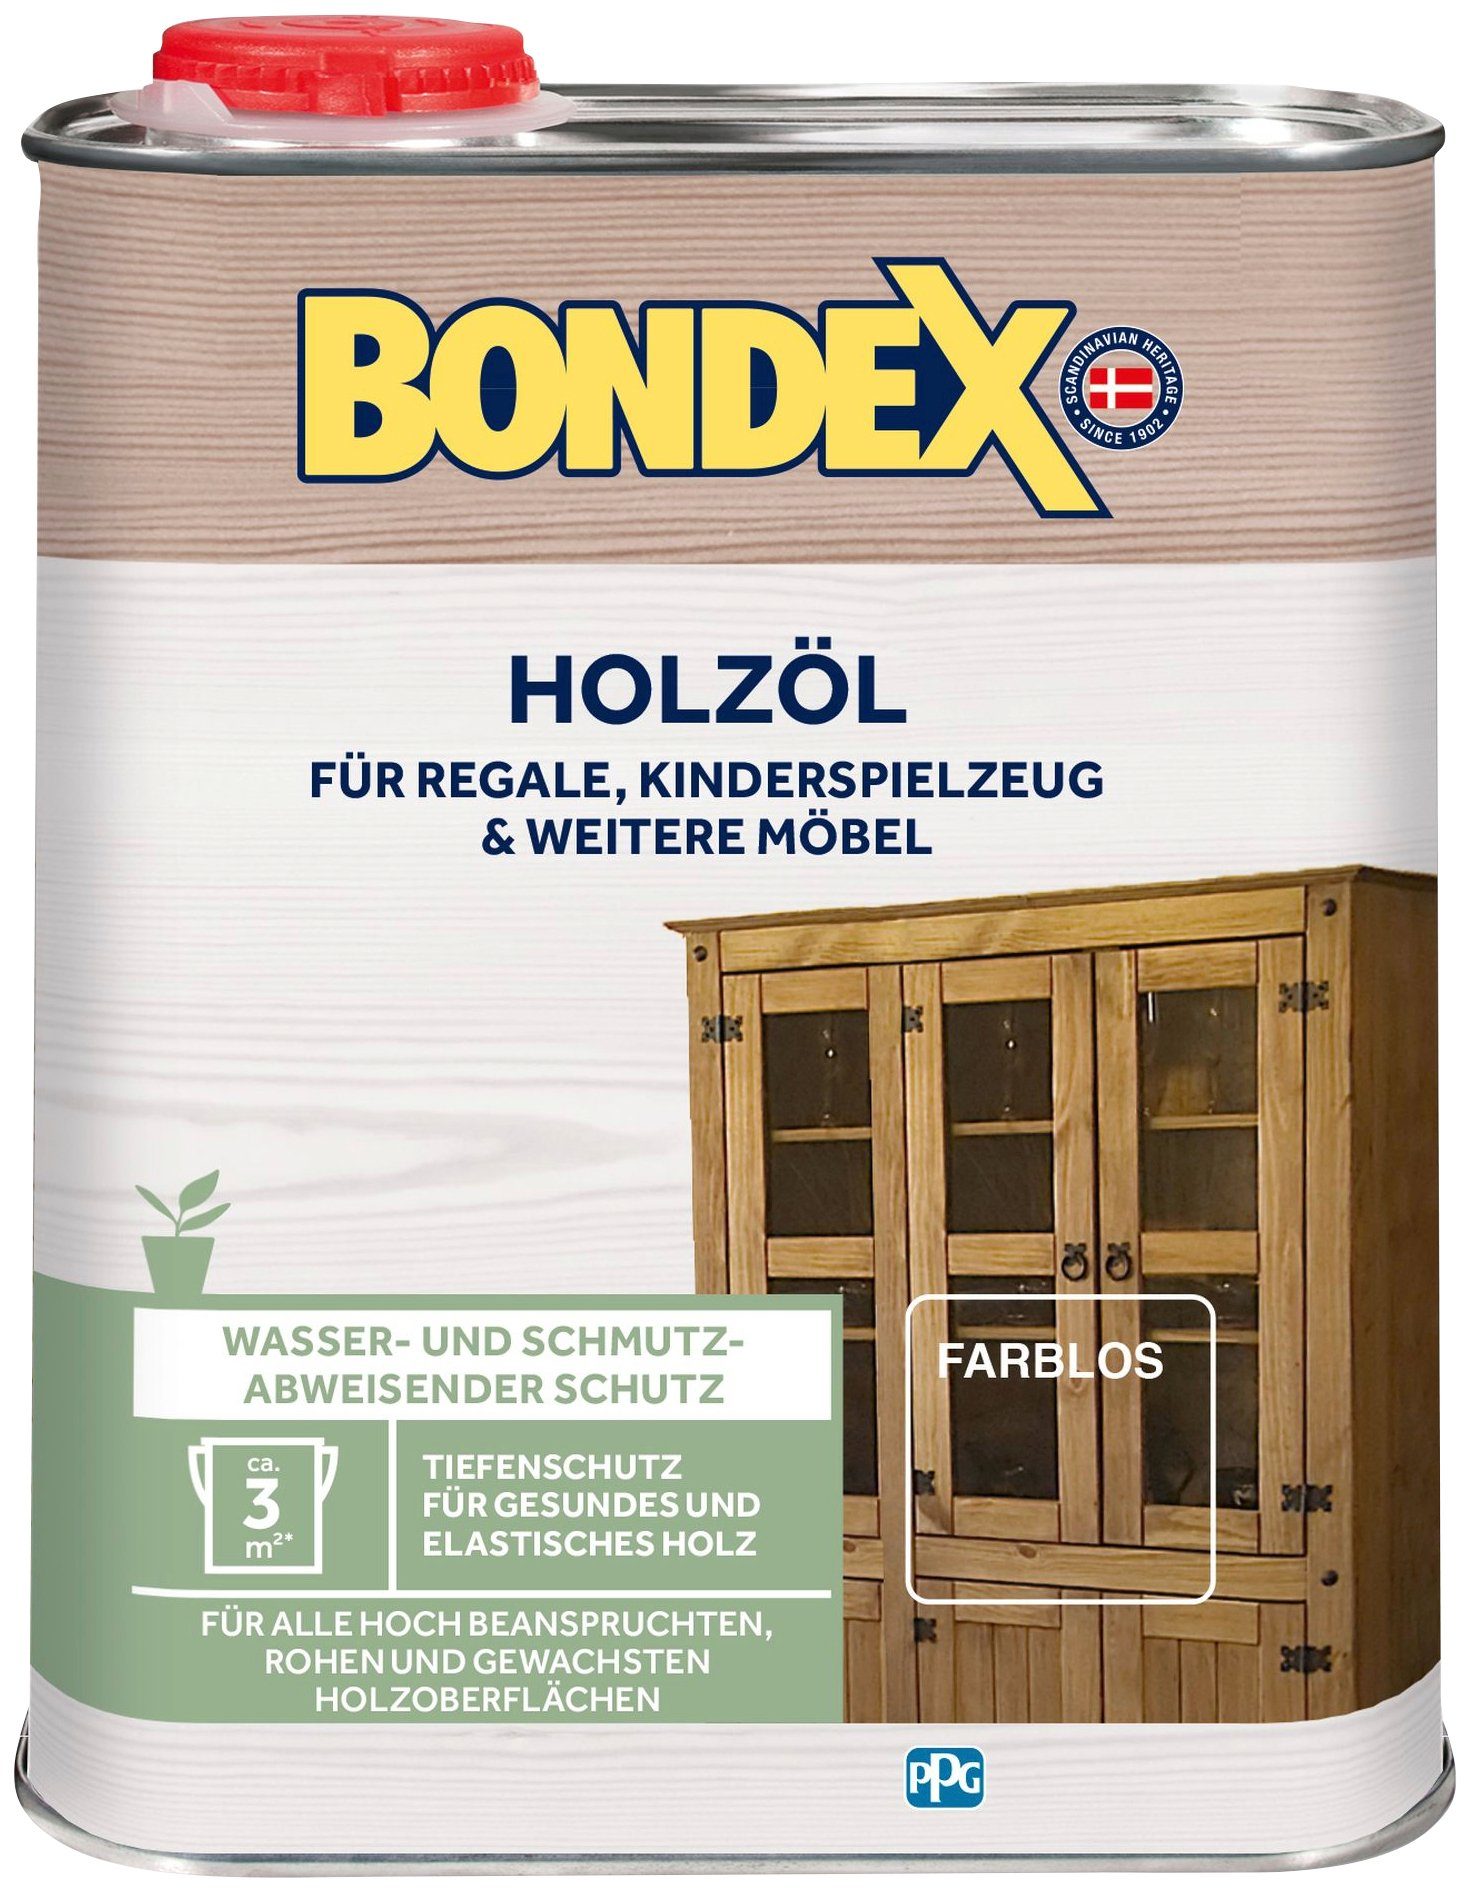 Liter 0,25 Holzöl natur Inhalt Bondex HOLZÖL, Farblos,